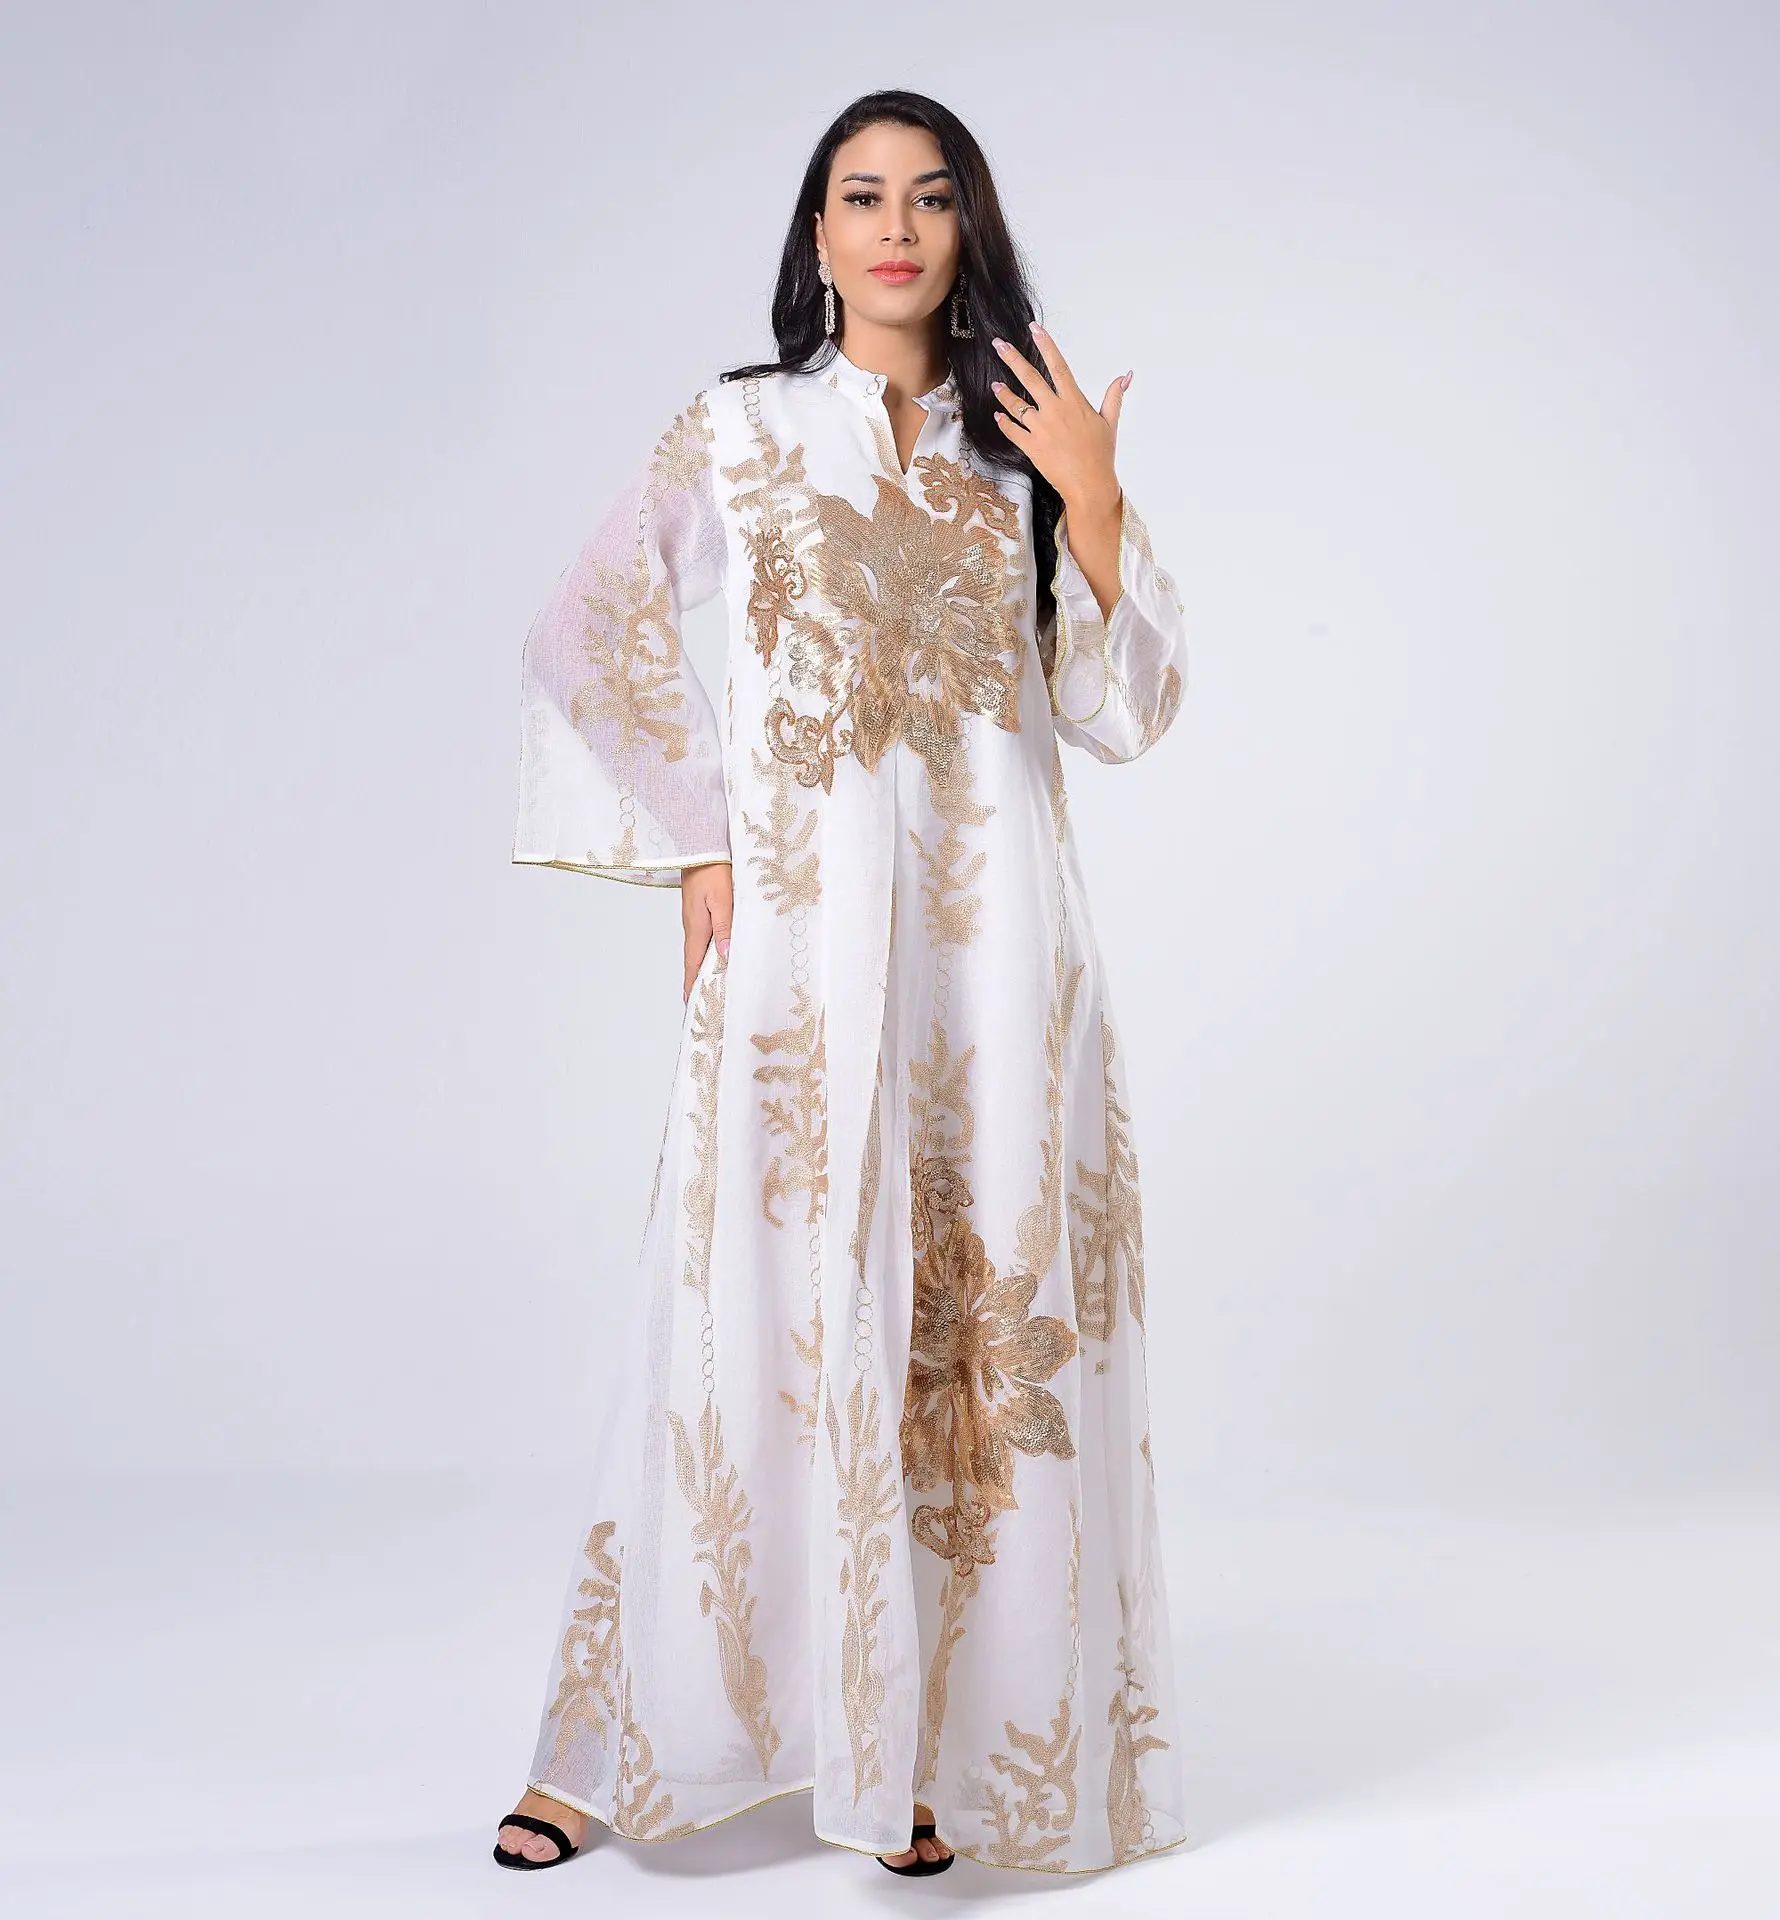 Caftan Marocain Abaya Dubai мусульманский хиджаб платье с золотой вышивкой блестками кафтан одежда африканские платья женское платье Арабский мусульм...